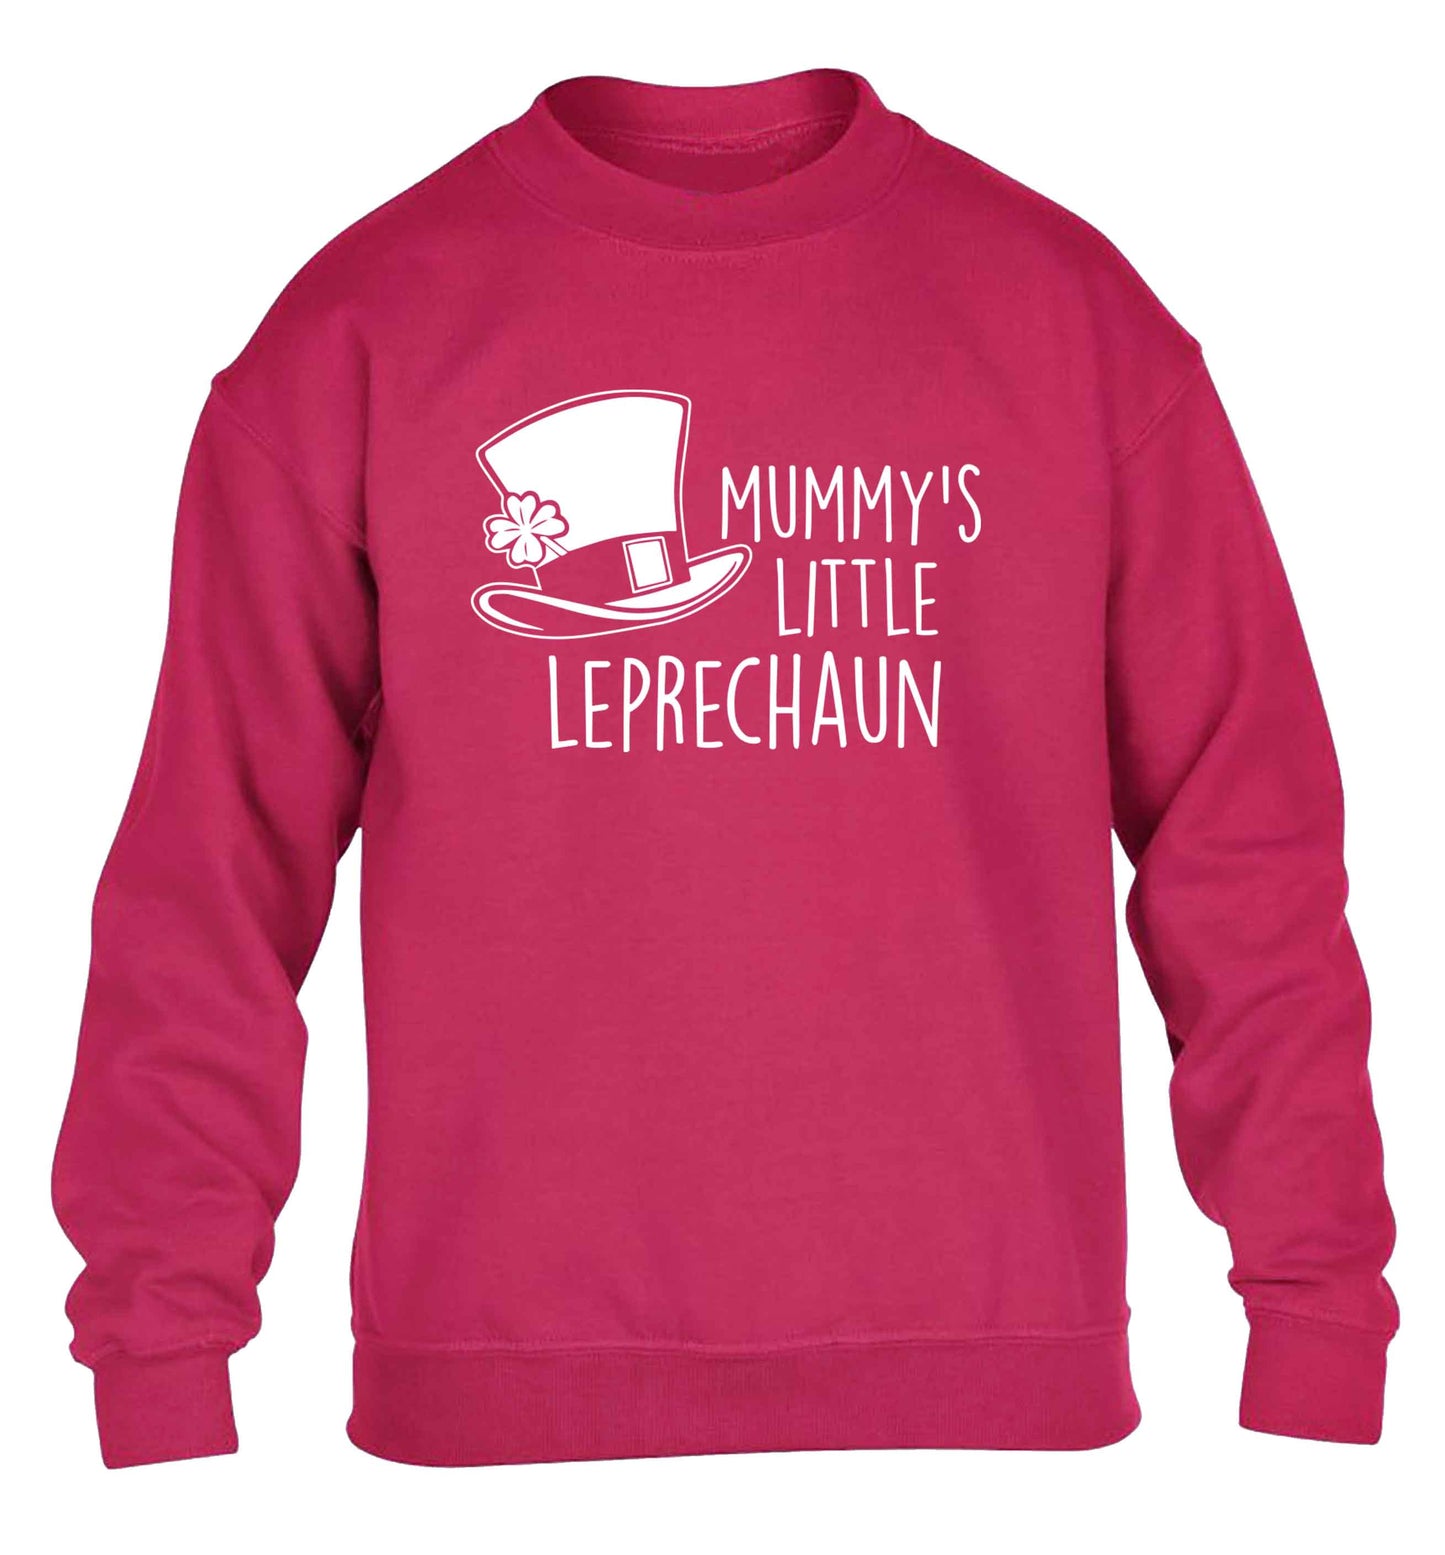 Mummy's little leprechaun children's pink sweater 12-13 Years